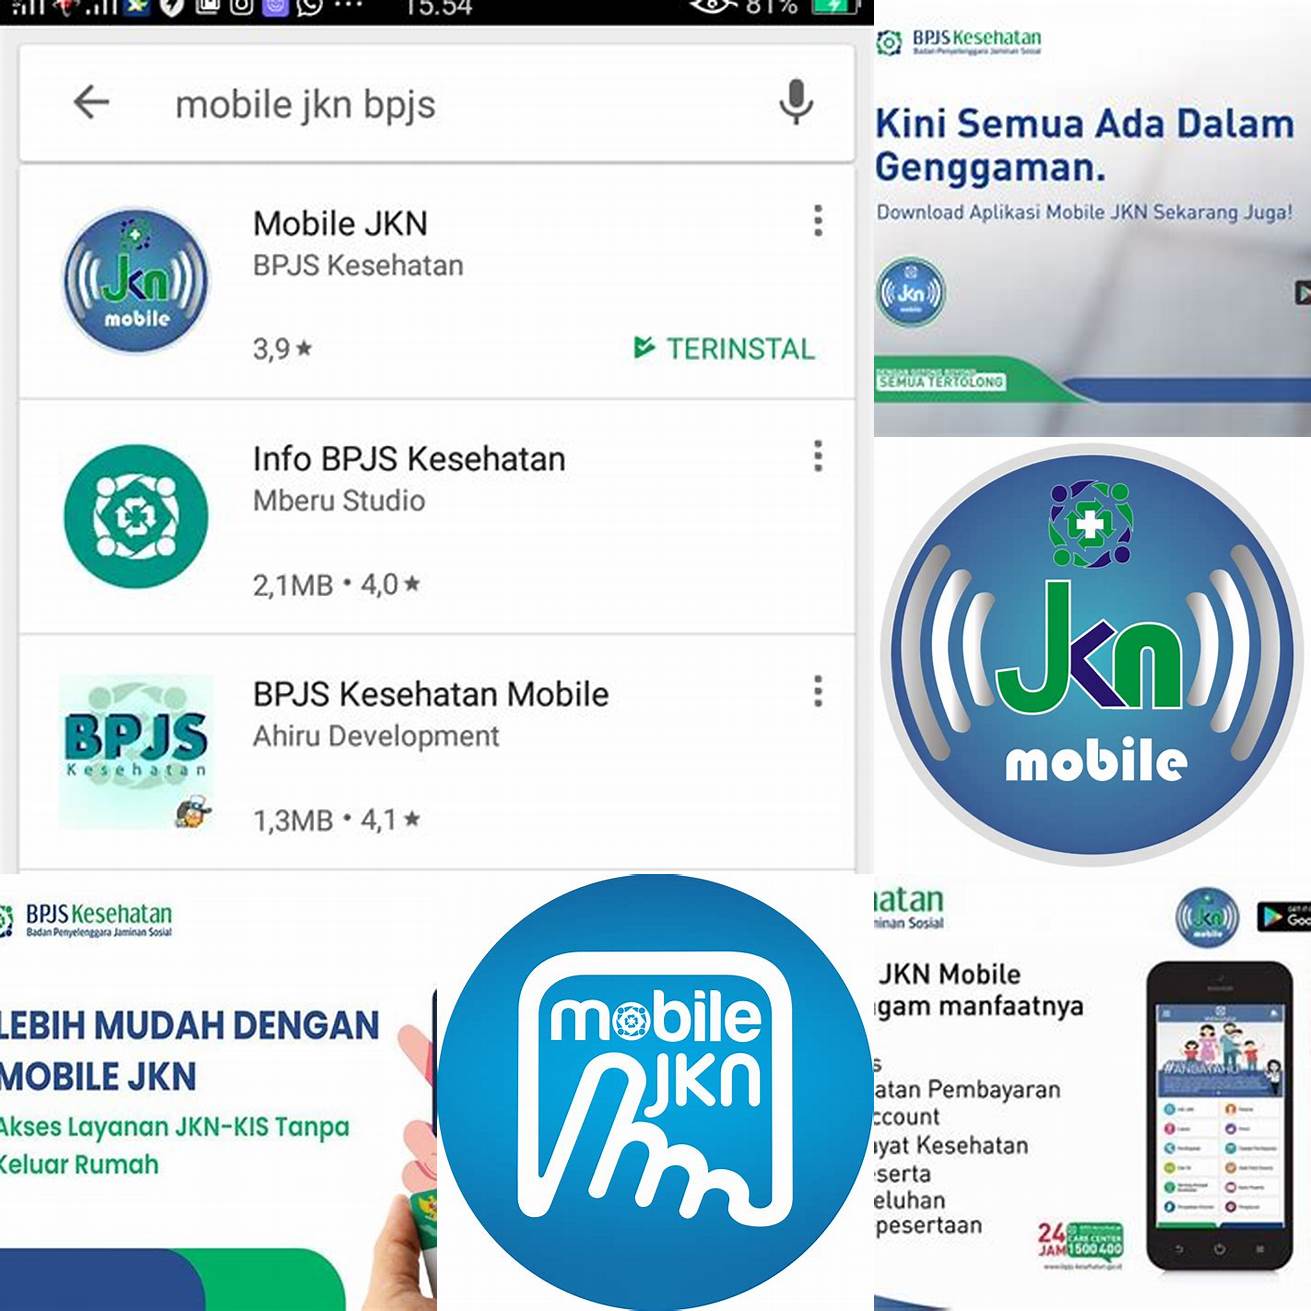 Buka aplikasi JKN Mobile